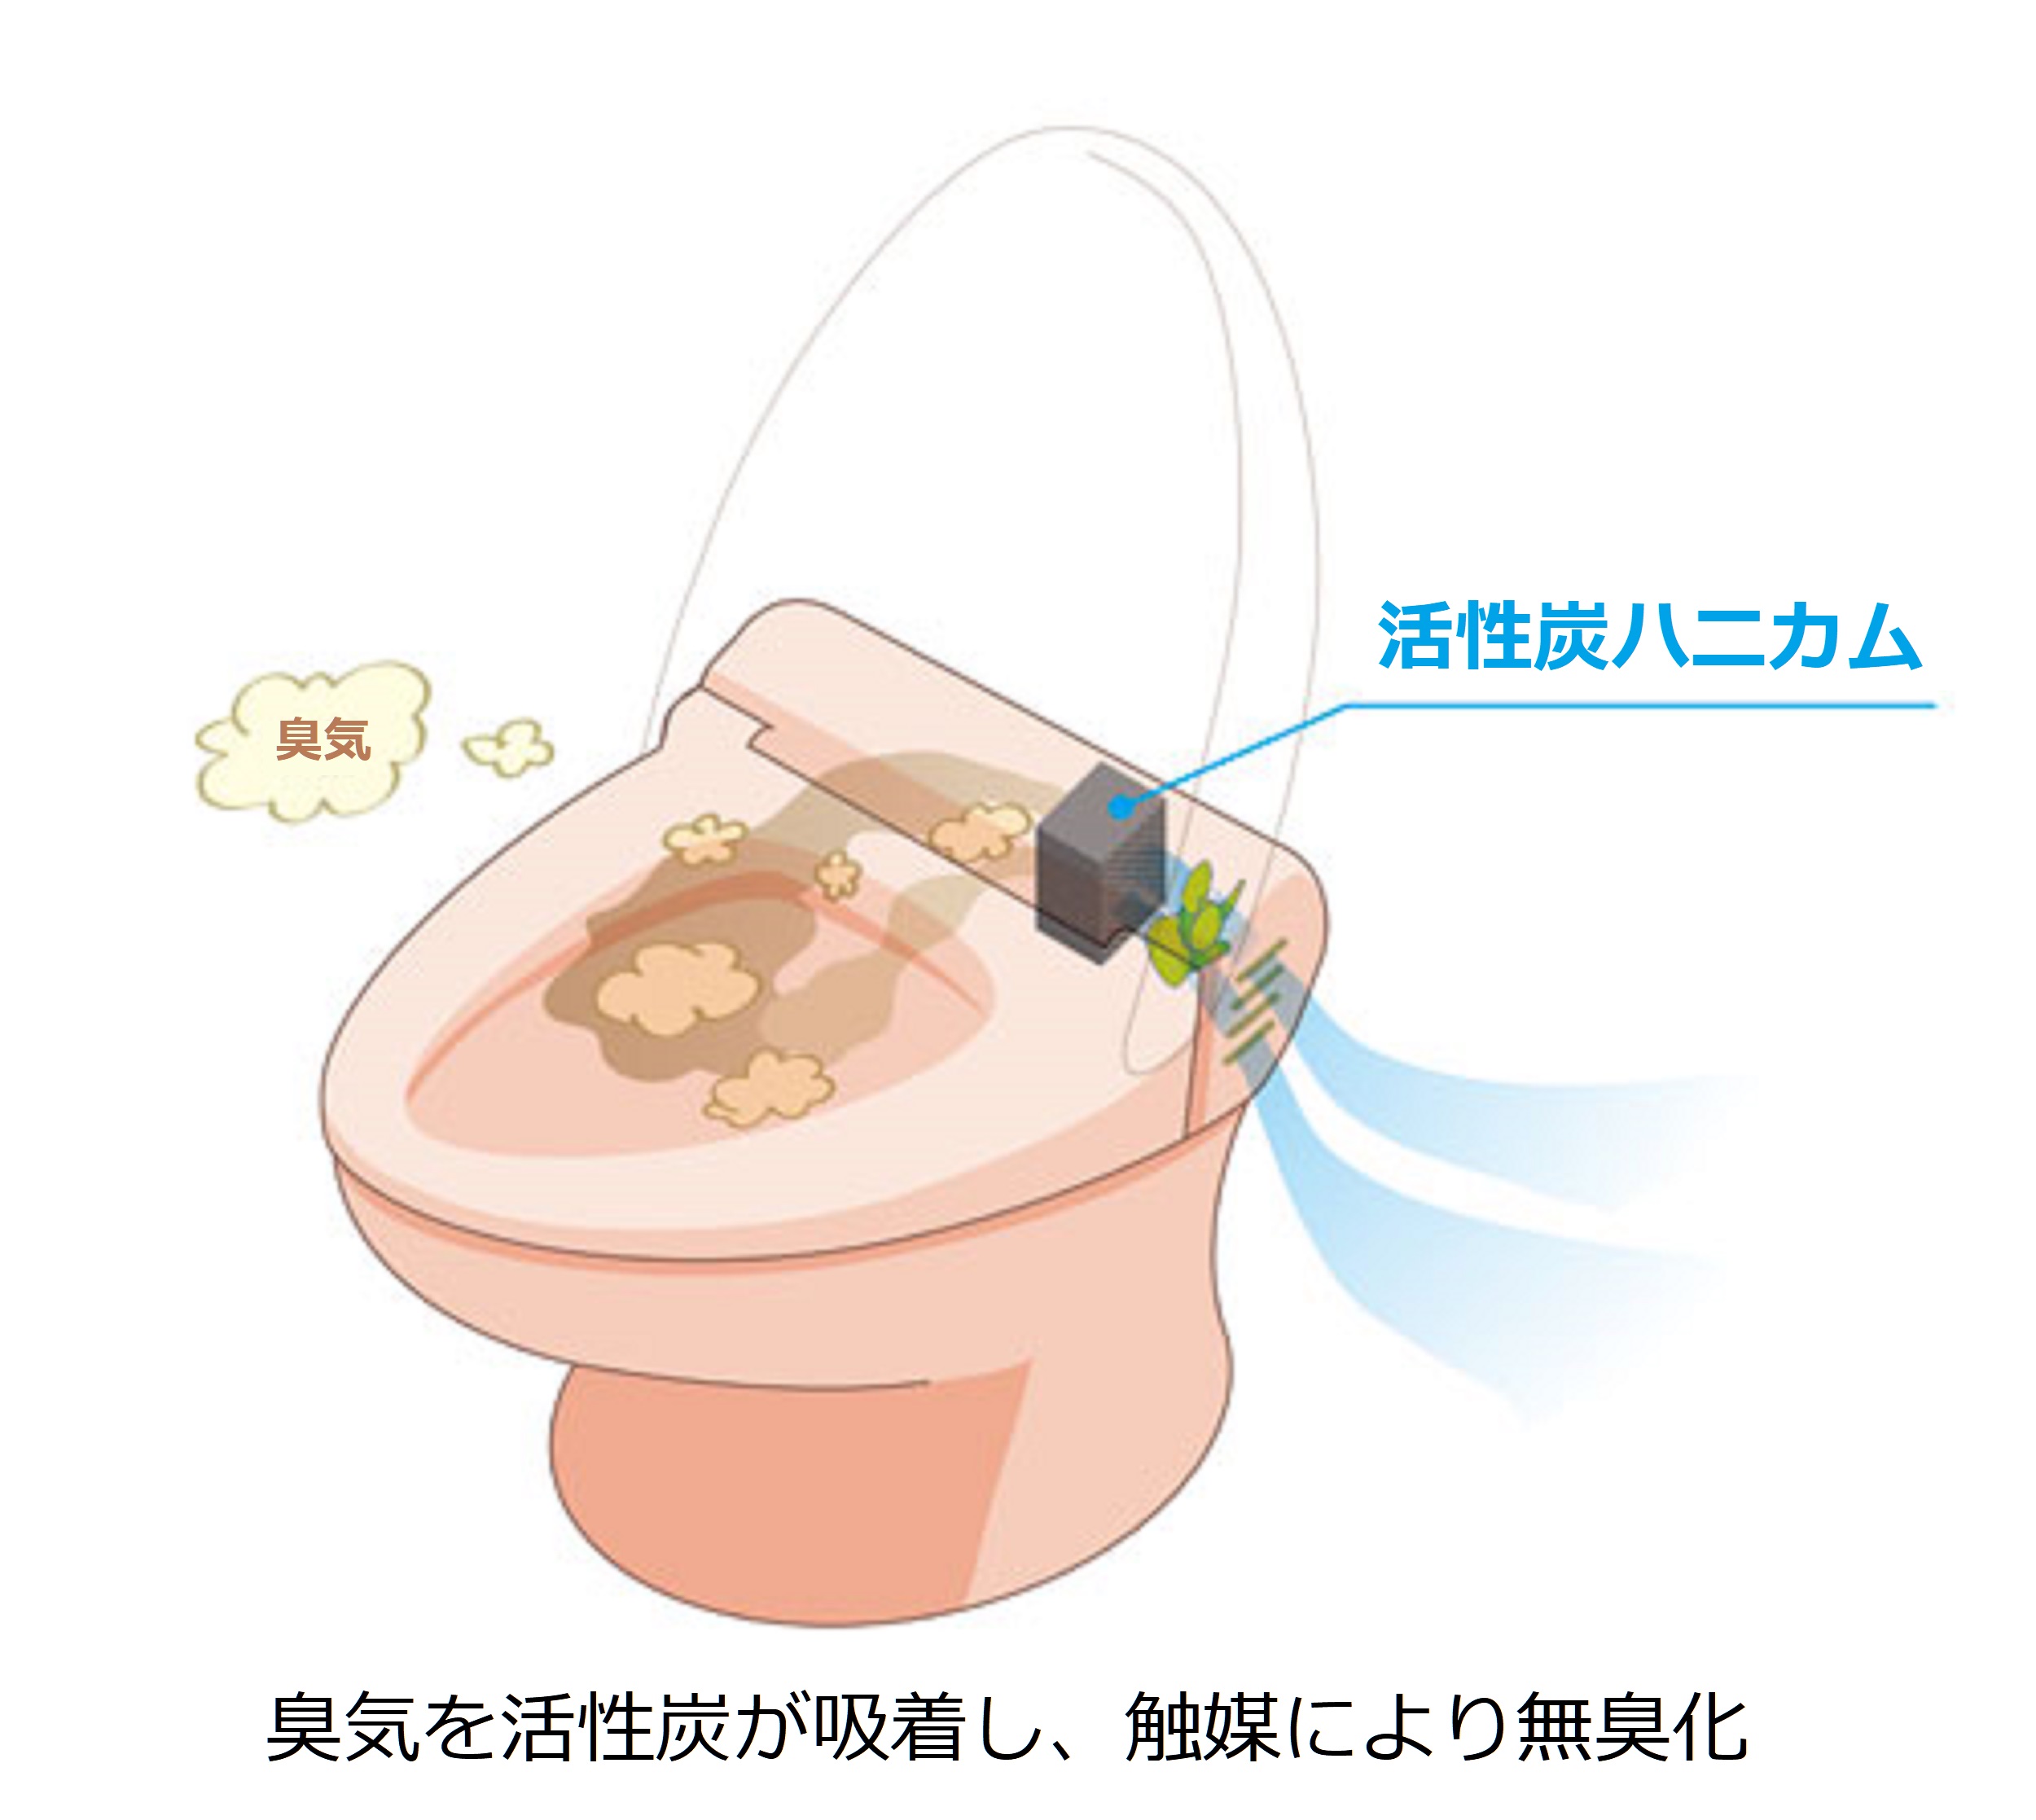 蜂窝状活性炭的产品示例和厕所除臭图片。